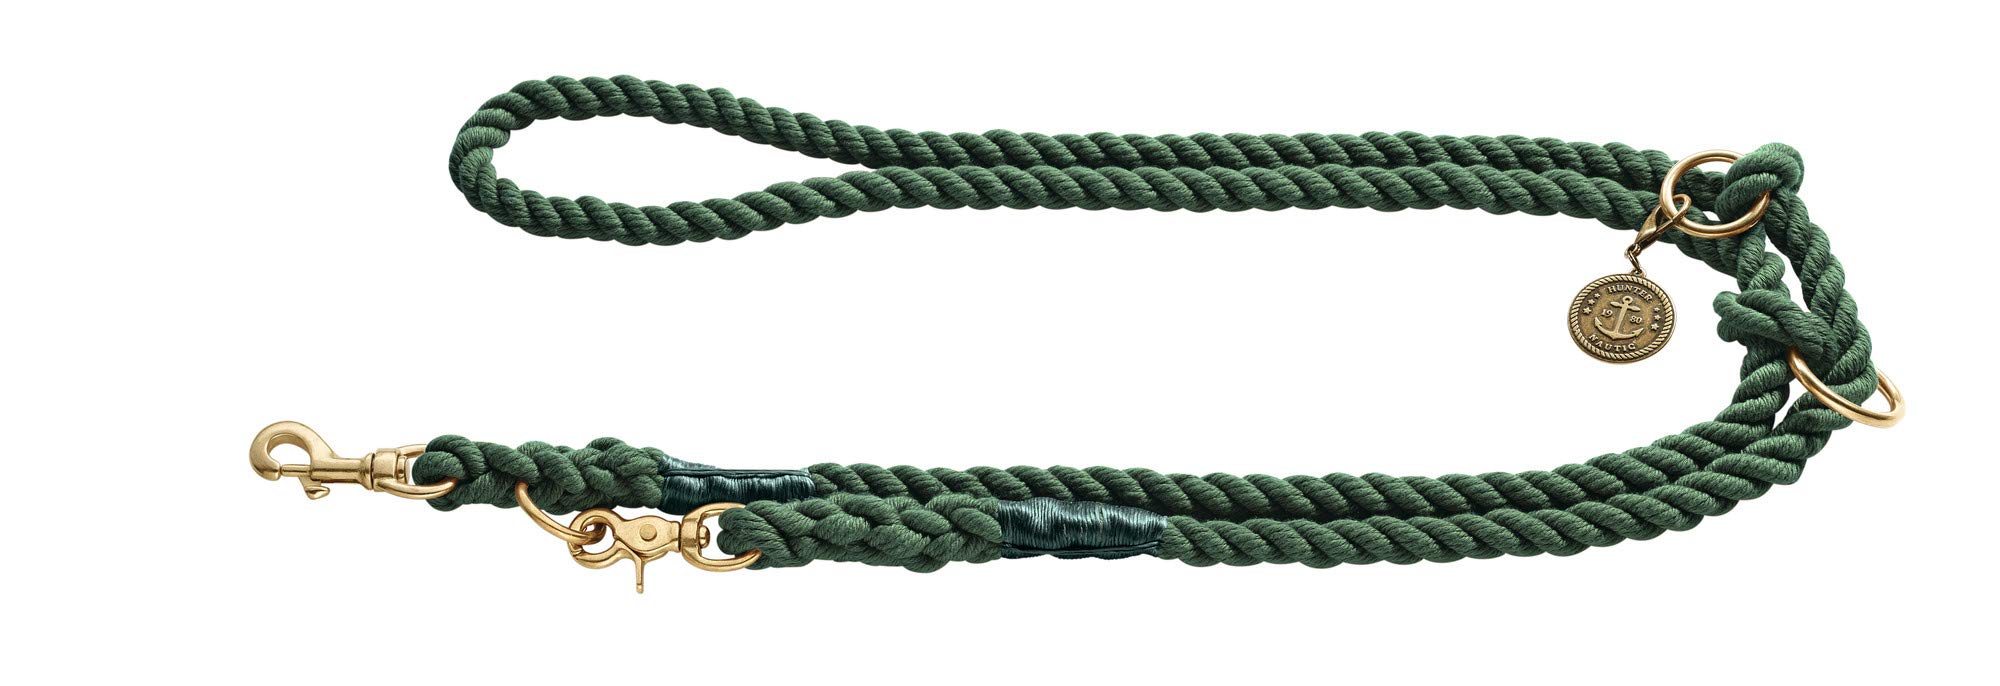 HUNTER LIST Verstellbare Führleine, Seil, Messing-Karabiner, maritim, 1, 2 x 200 cm, oliv